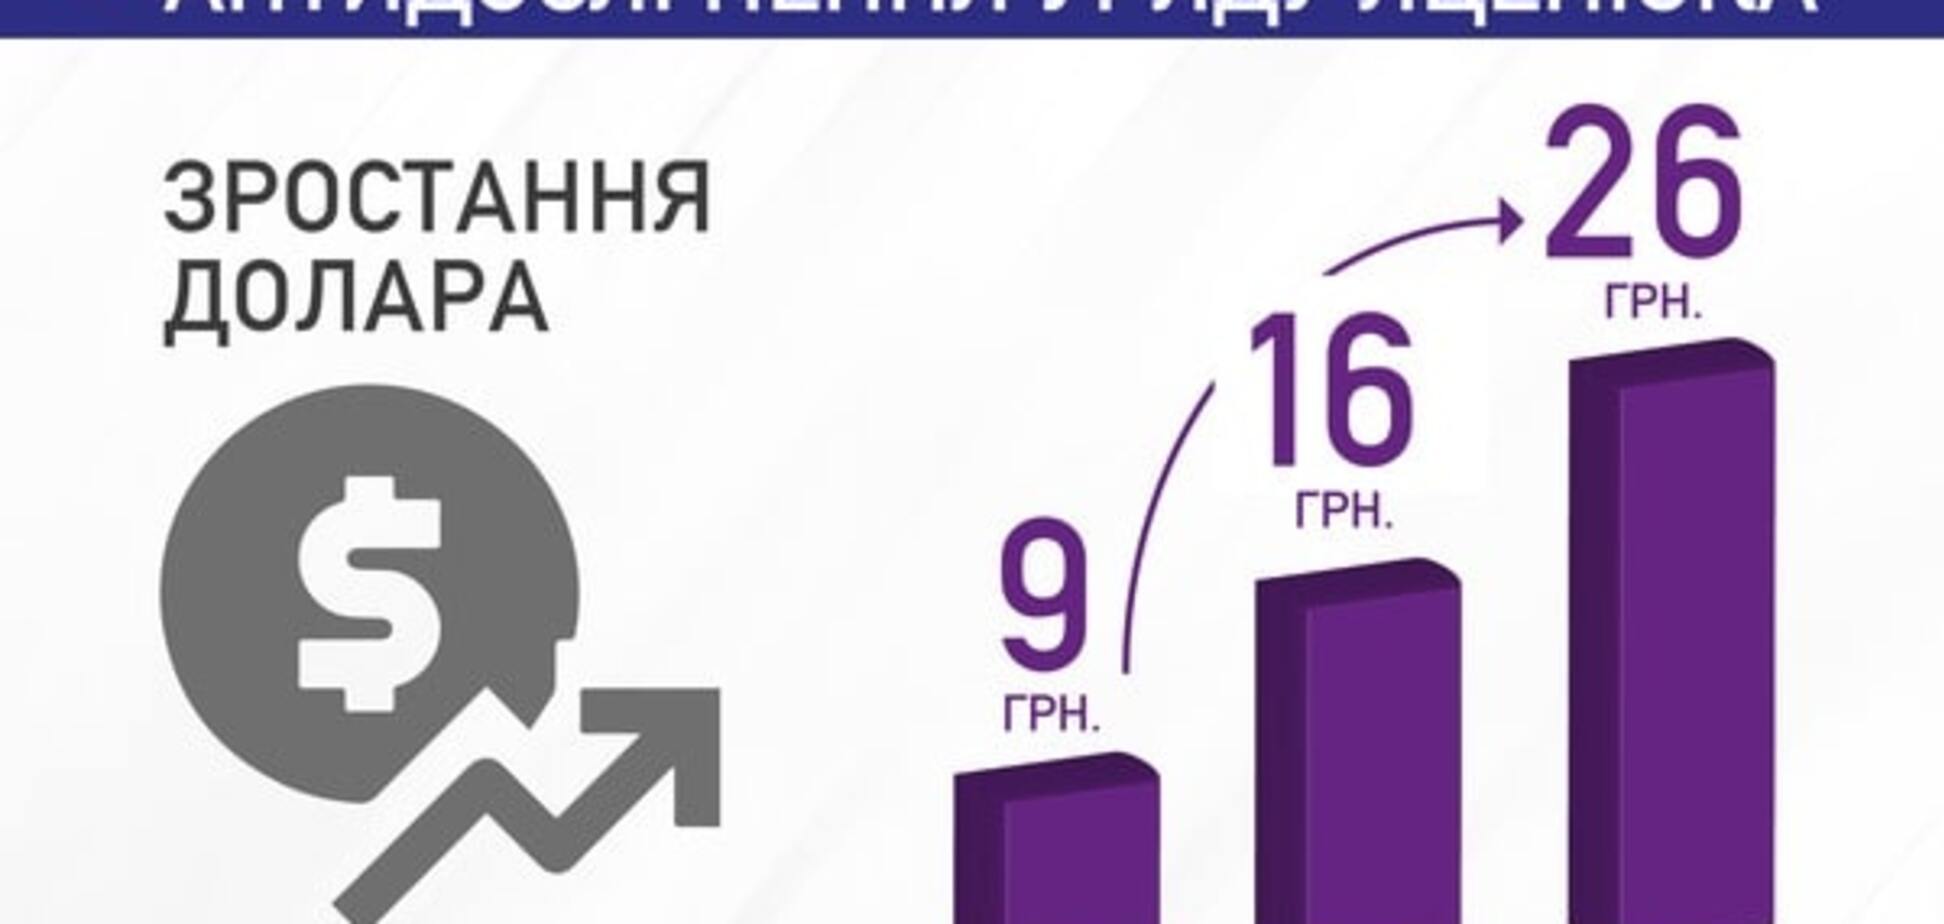 Антиотчет Кабмина Яценюка: борщ по 128 грн и доллар почти по 30